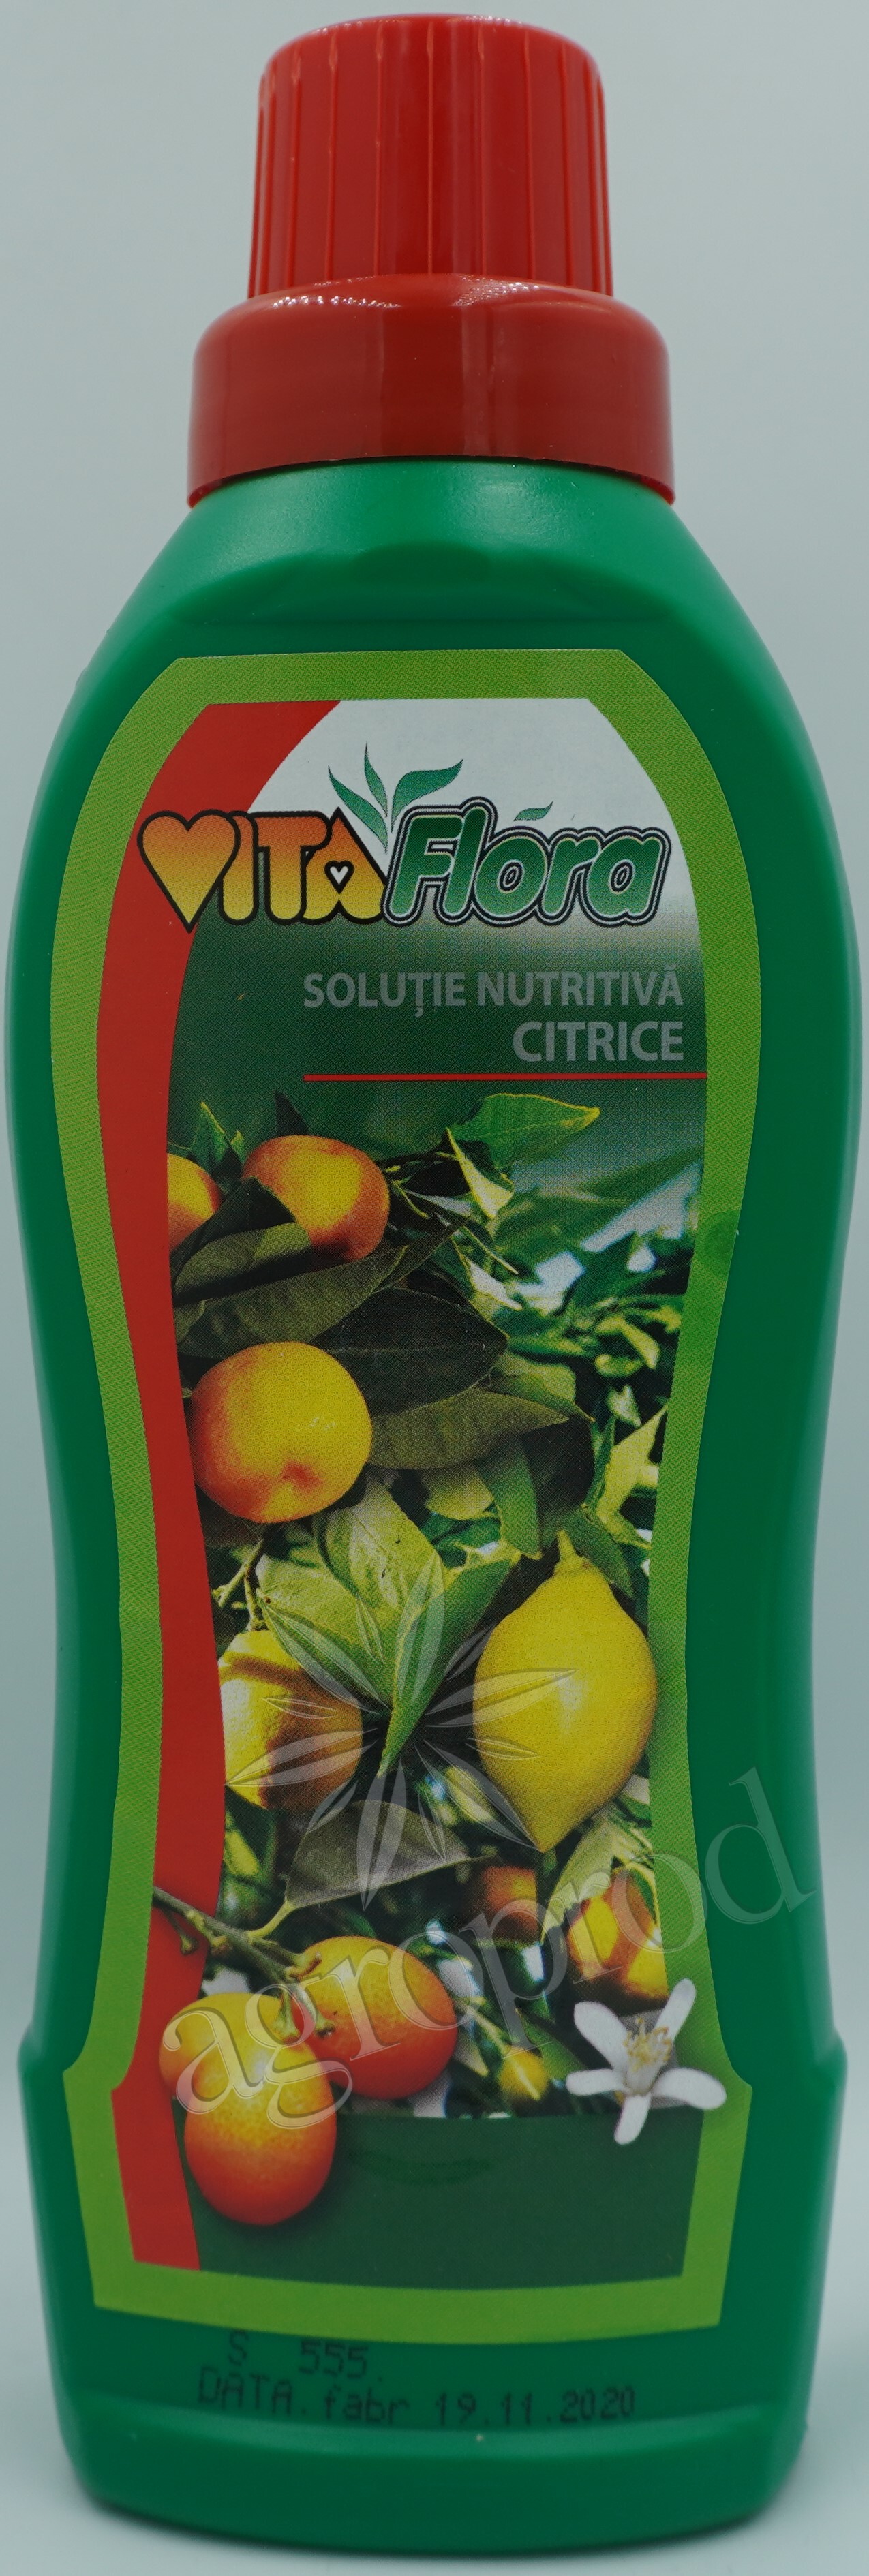 Vitaflora pentru citrice 500ml